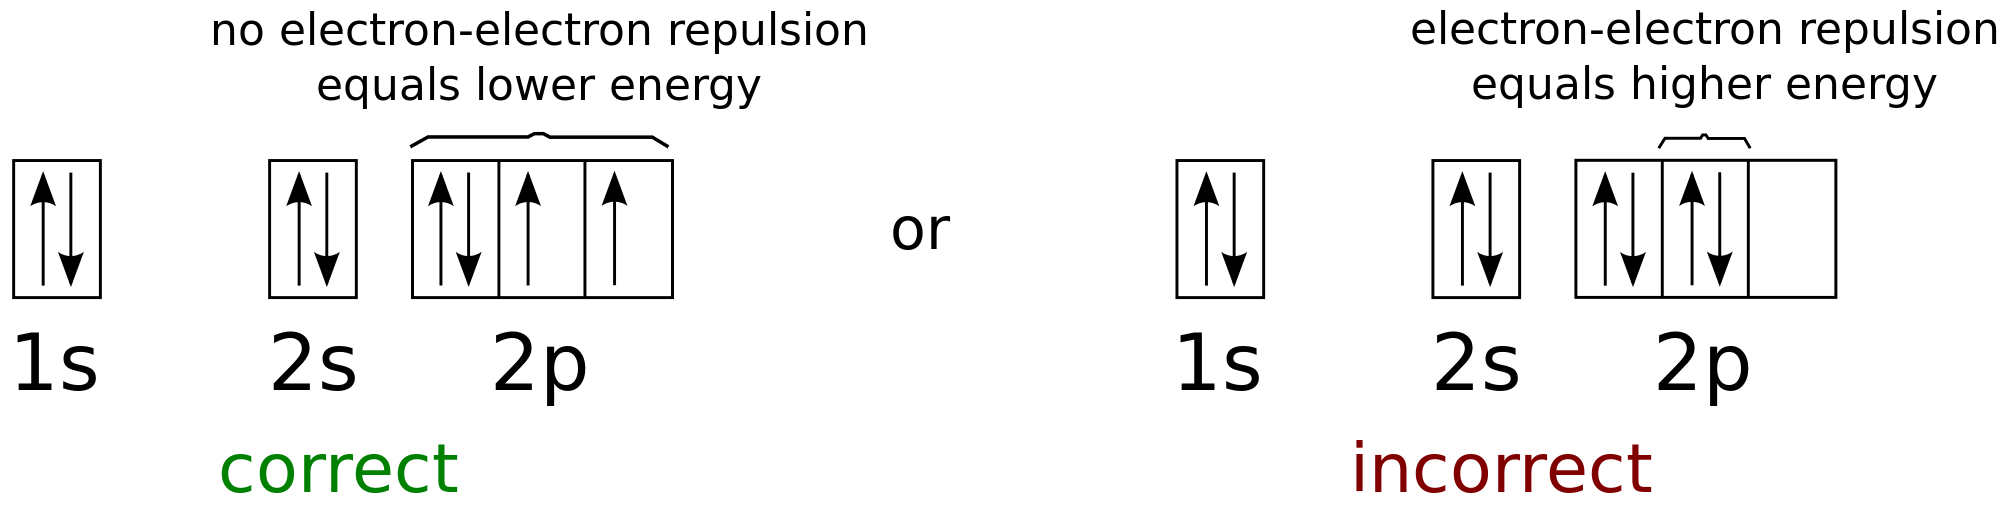 orbital diagram for scandium